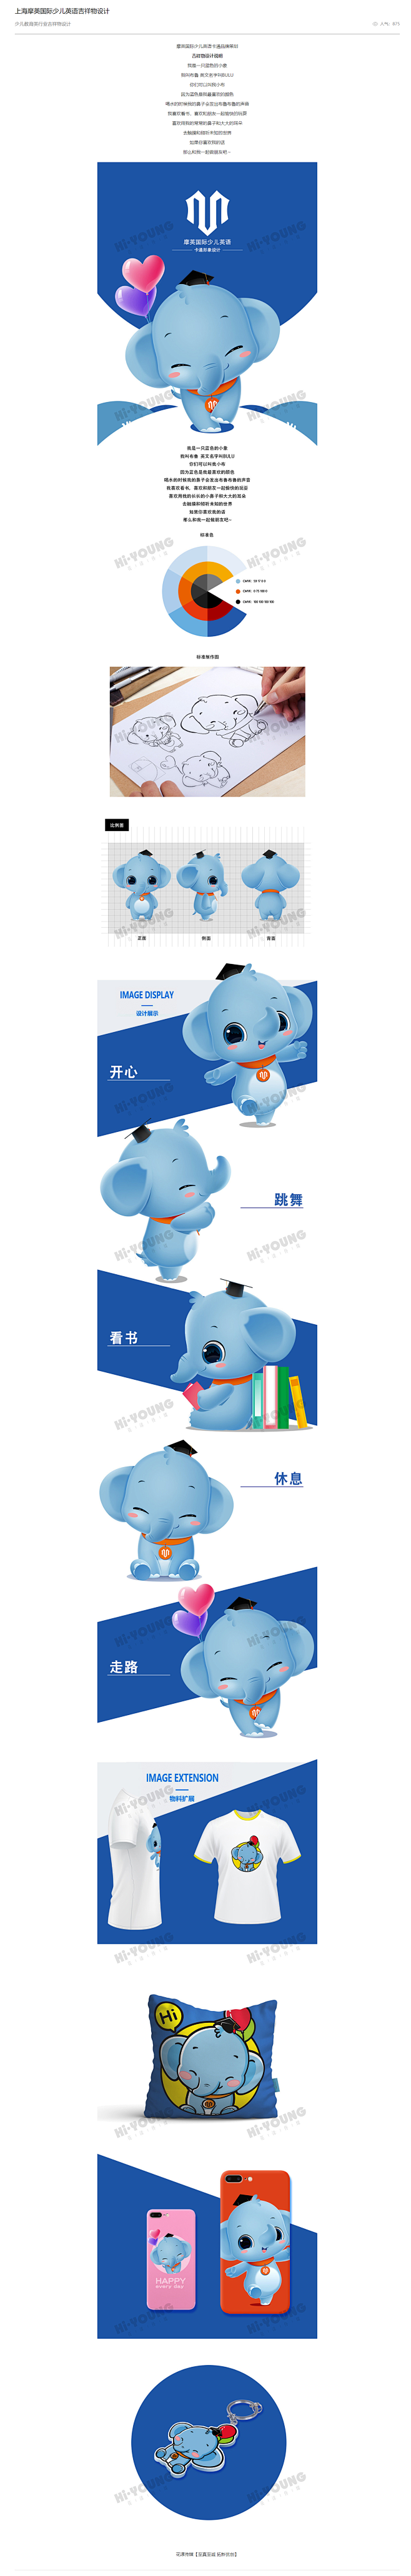 上海摩英国际少儿英语小象吉祥物设计 - ...